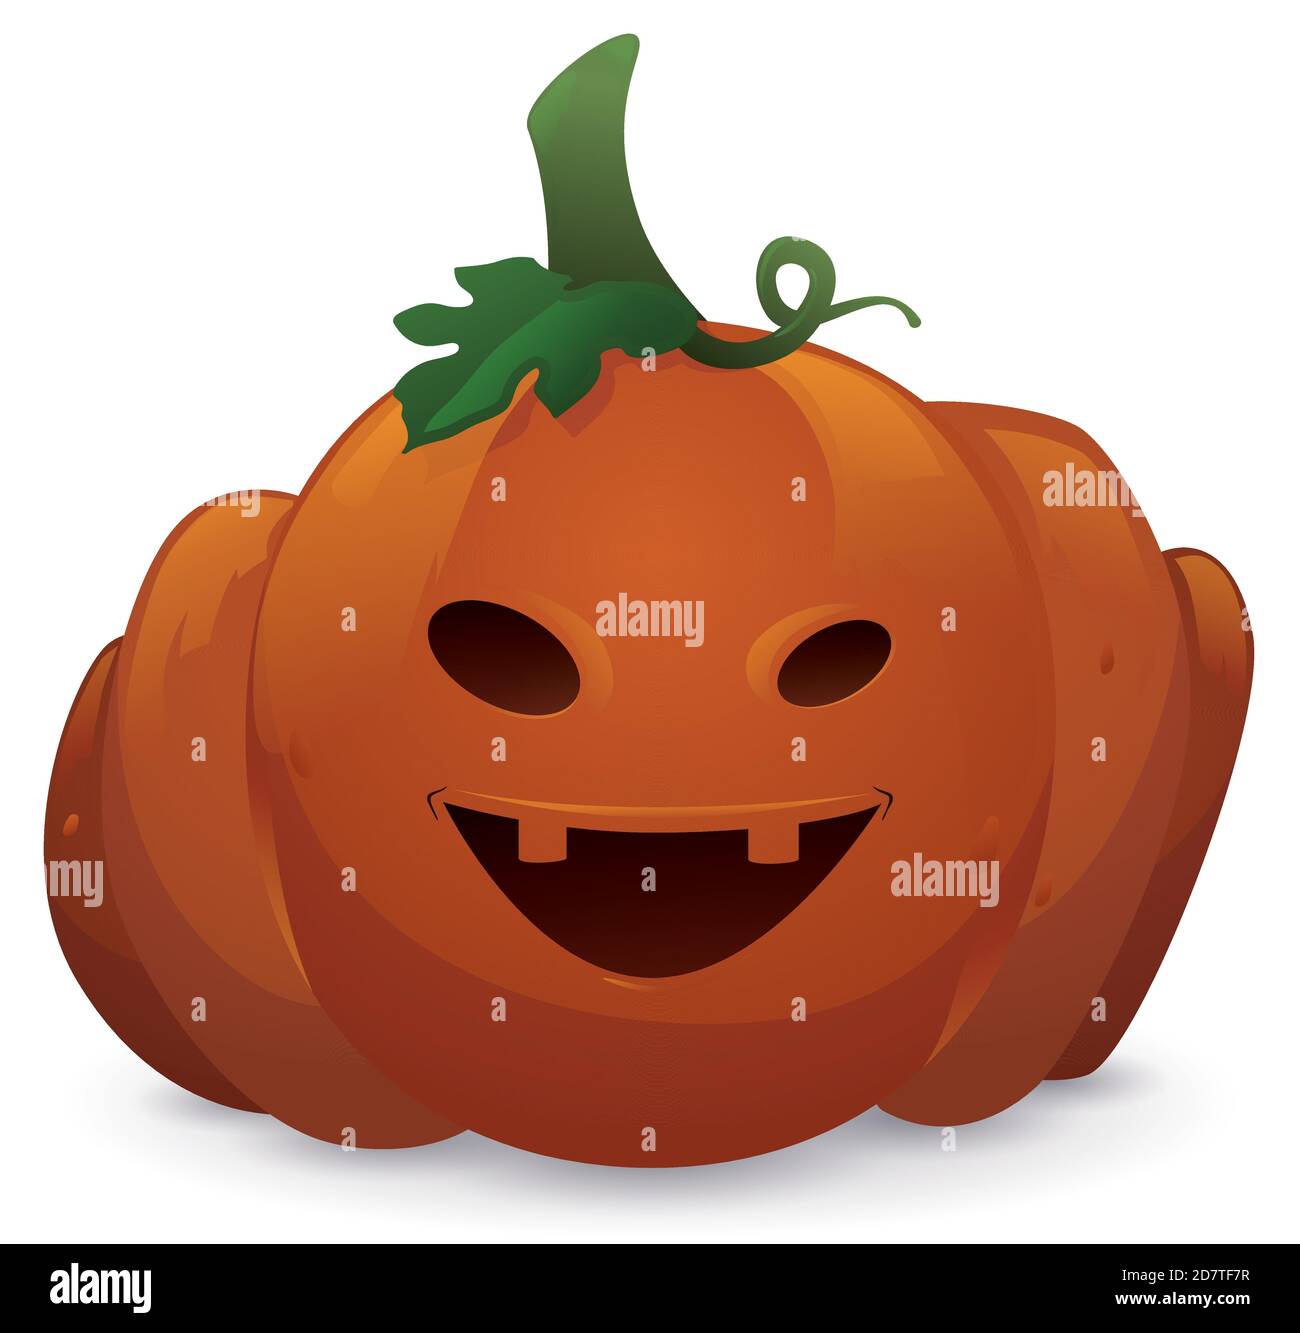 Zucca isolata con foglia, tendine e gambo e faccia scolpita sorridente  pronta per Halloween Immagine e Vettoriale - Alamy